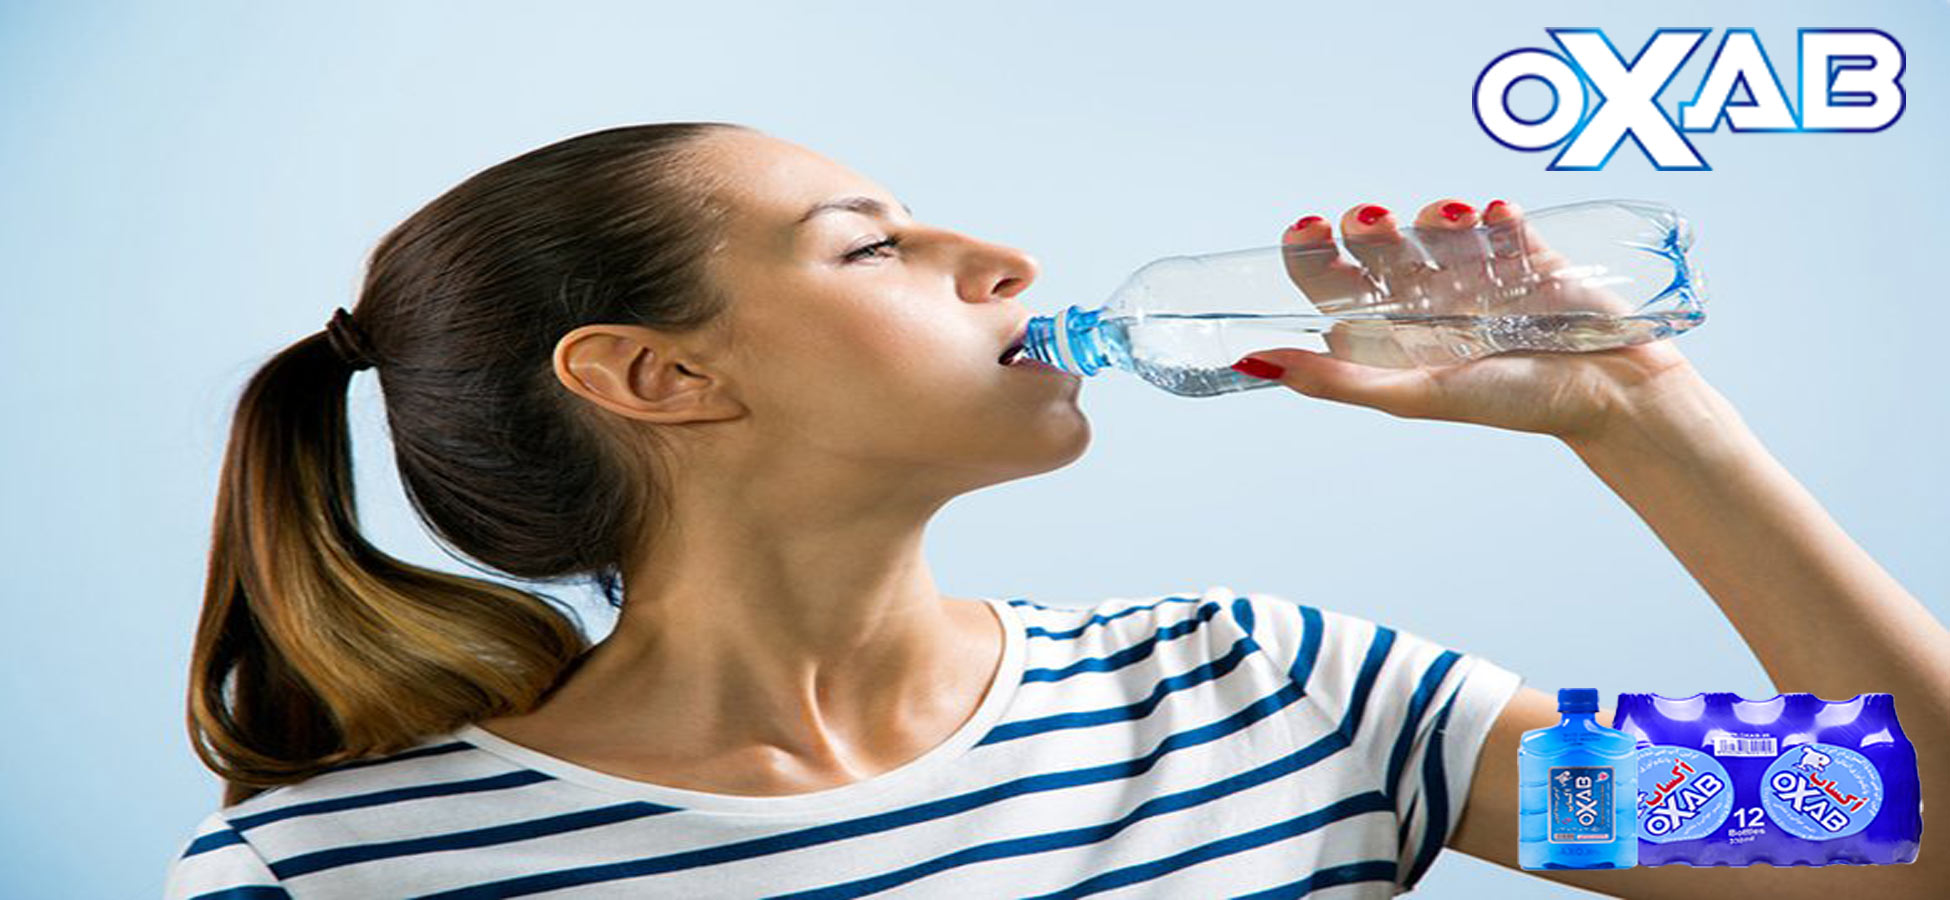 آیا نوشیدن آب زیاد ضرر دارد؟